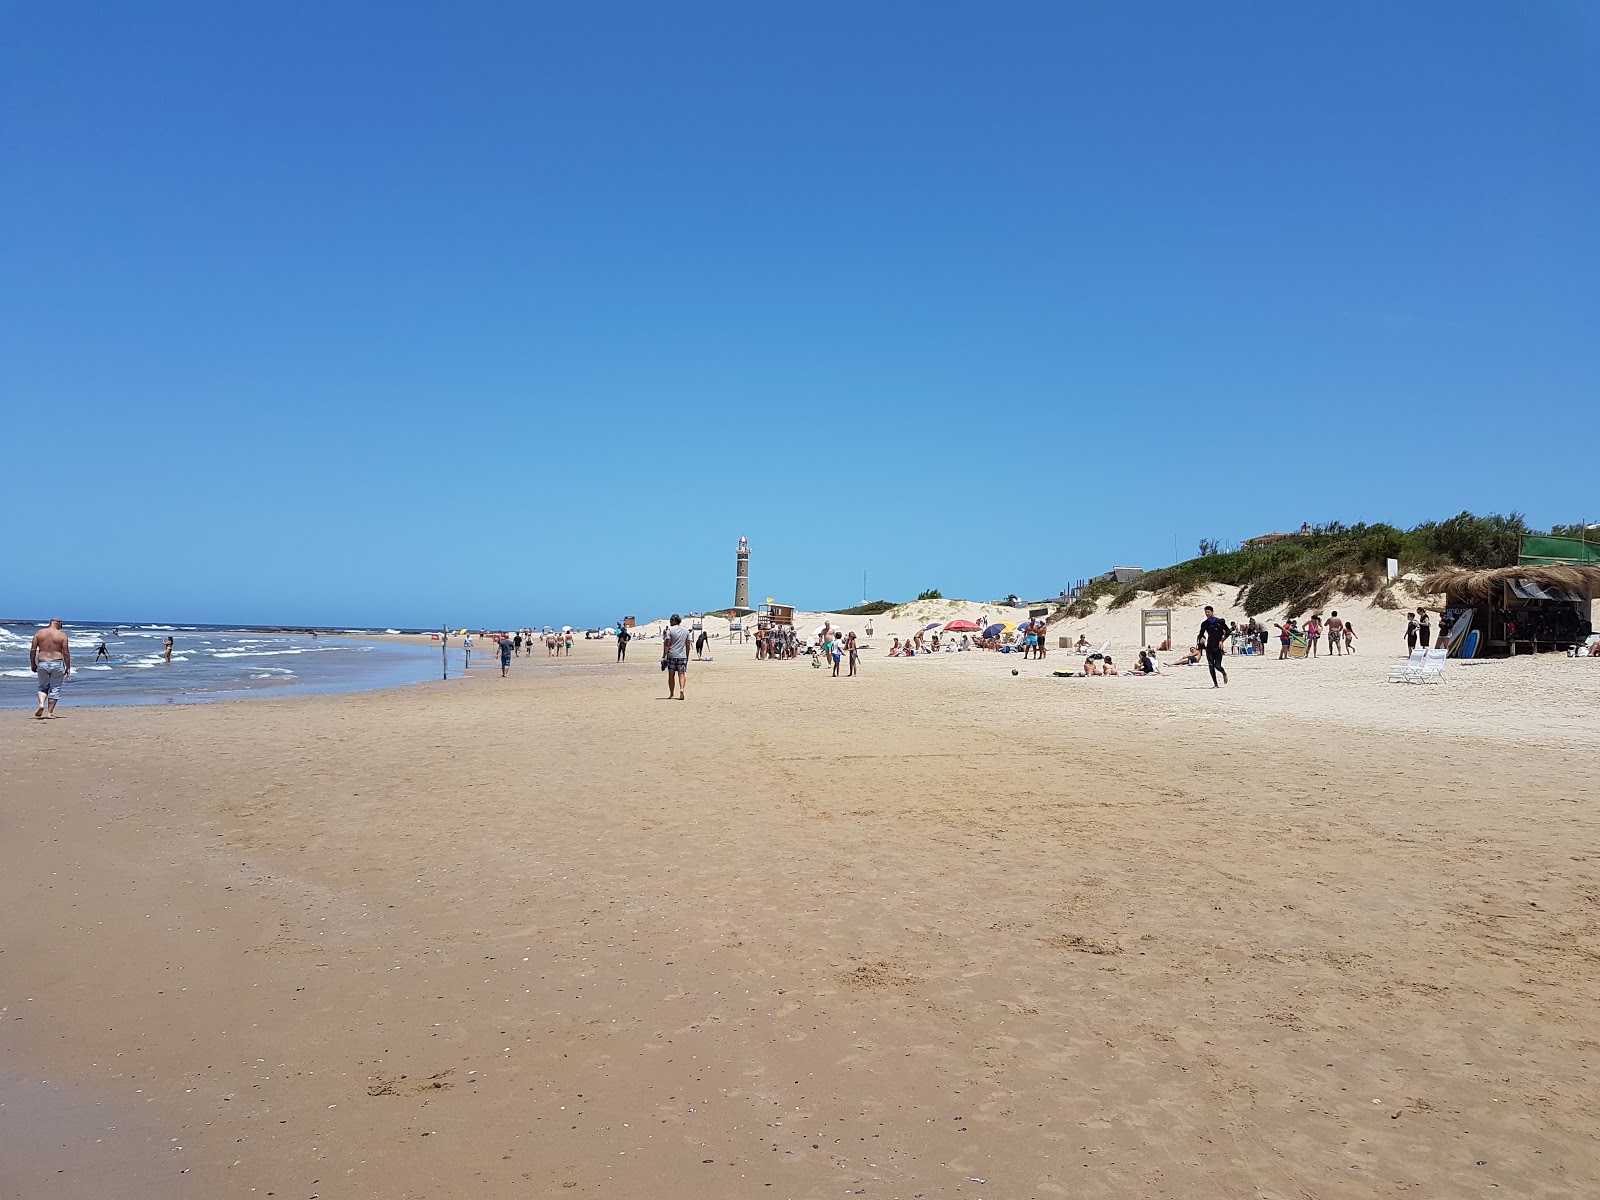 Valokuva Brava de Jose Ignacio Beachista. pinnalla turkoosi puhdas vesi:n kanssa